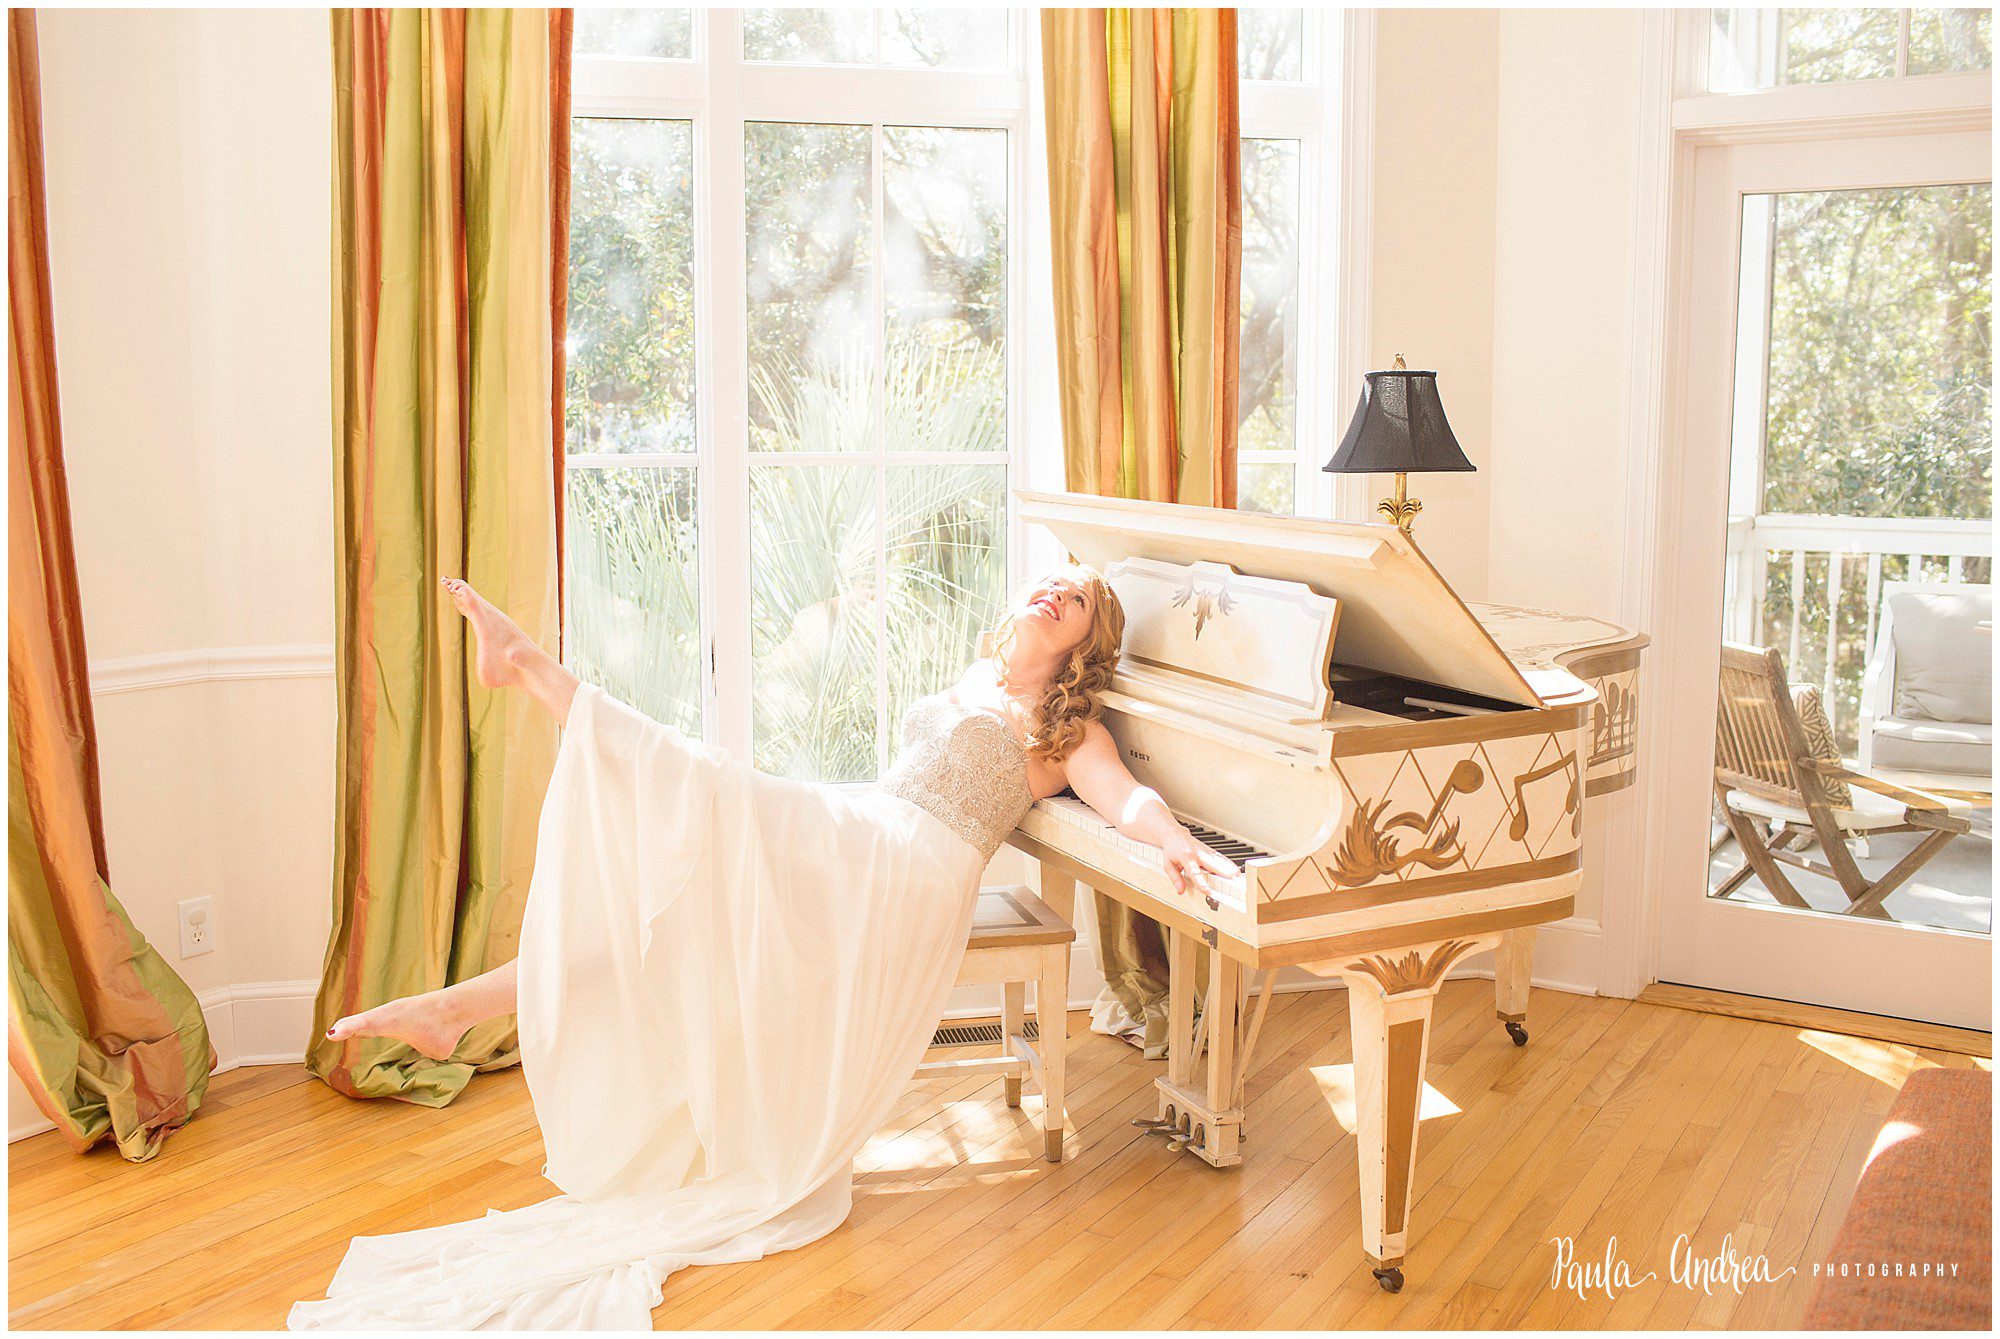 piano bridal portrait in charleston,sc 